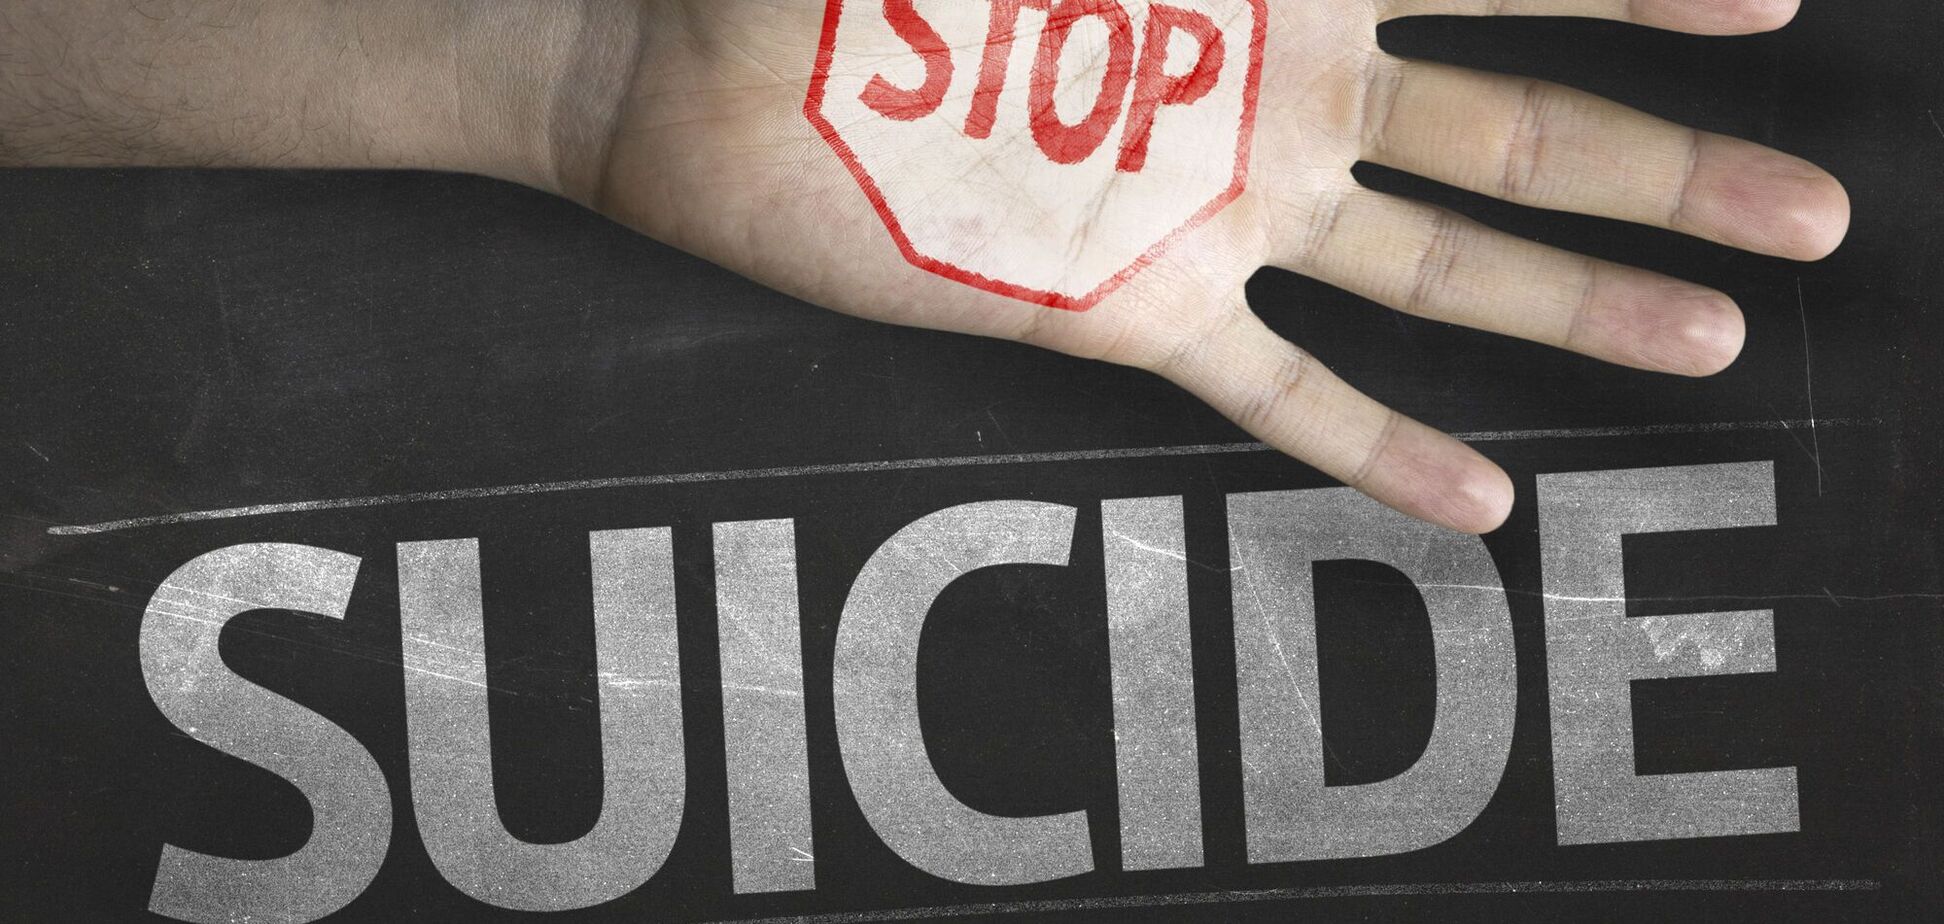 Суицид: вовремя выявить и предотвратить